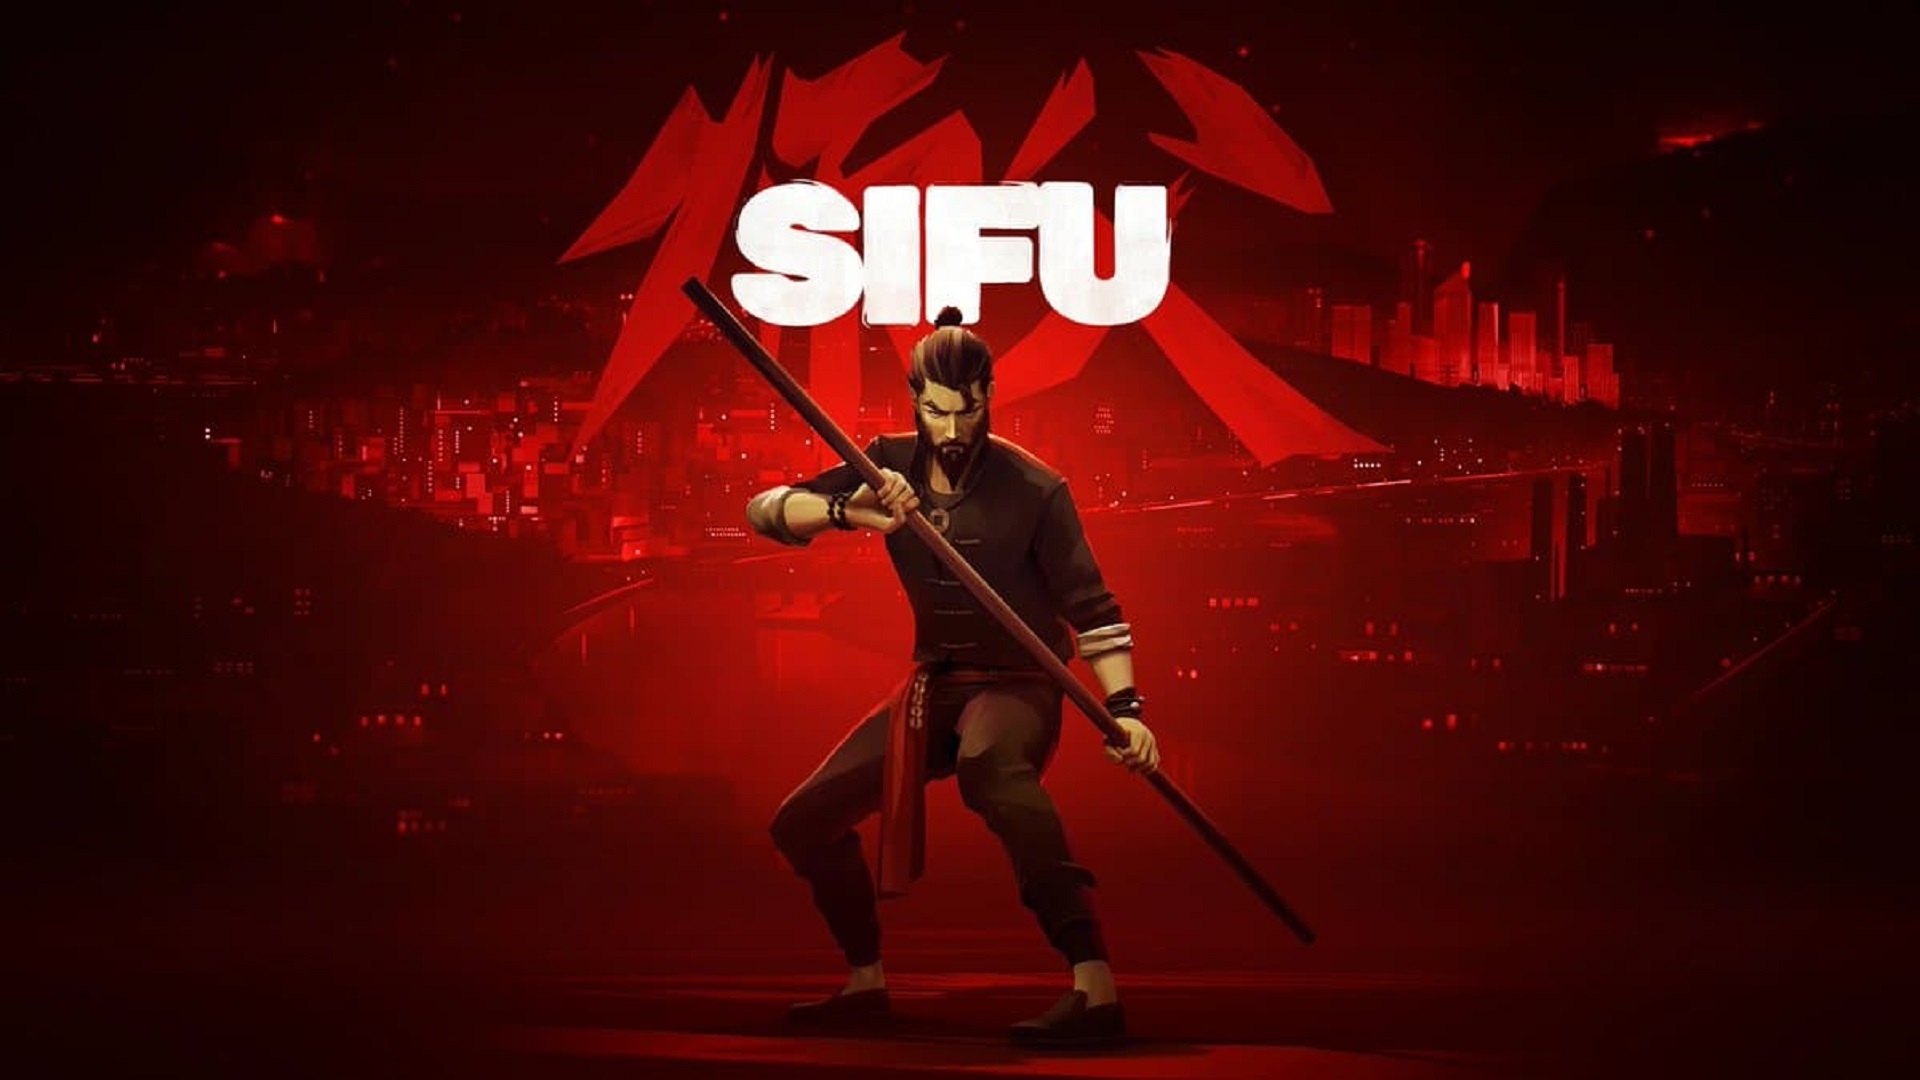 اضافه شدن محتویات بیشتر به بازی Sifu در آینده